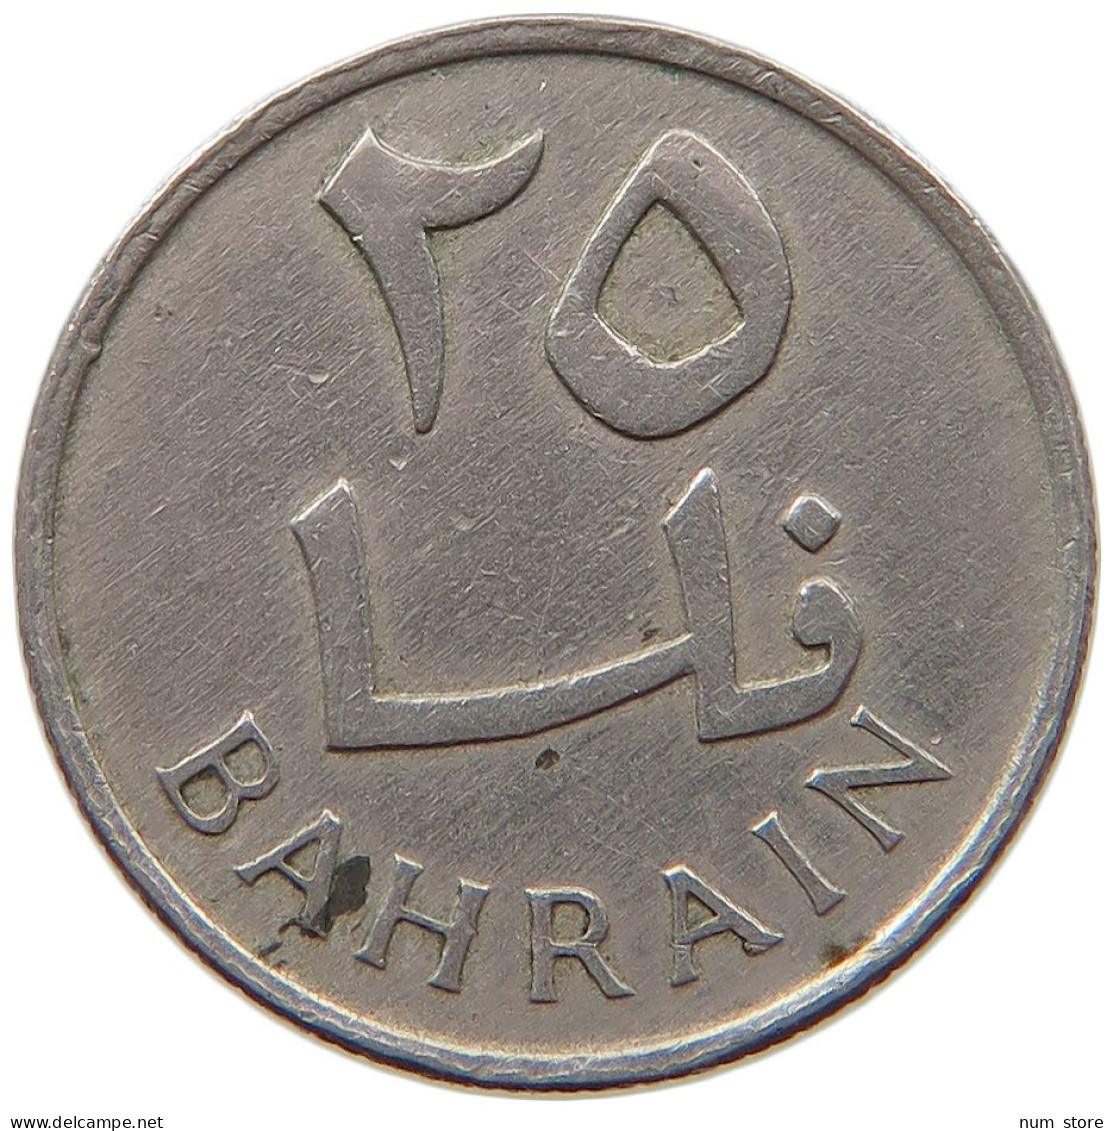 BAHRAIN 25 FILS 1965  #MA 065958 - Bahrain